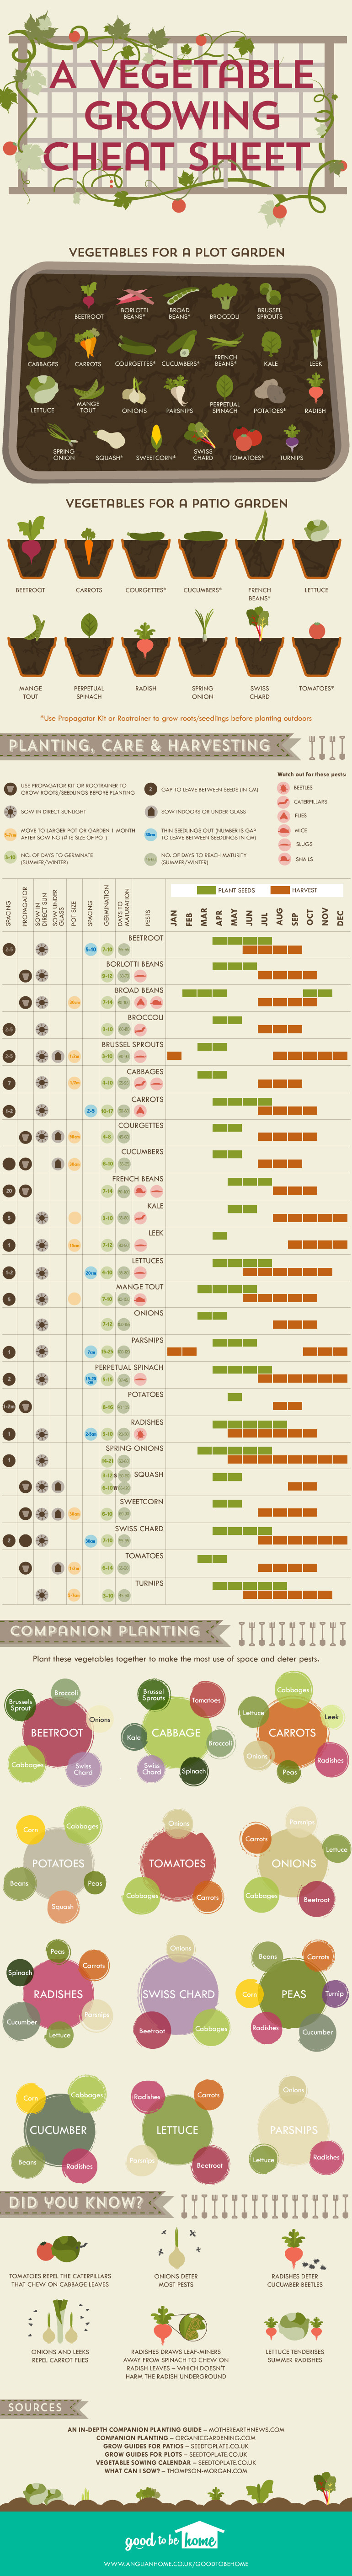 greenhouse gardener cheat sheet infographic